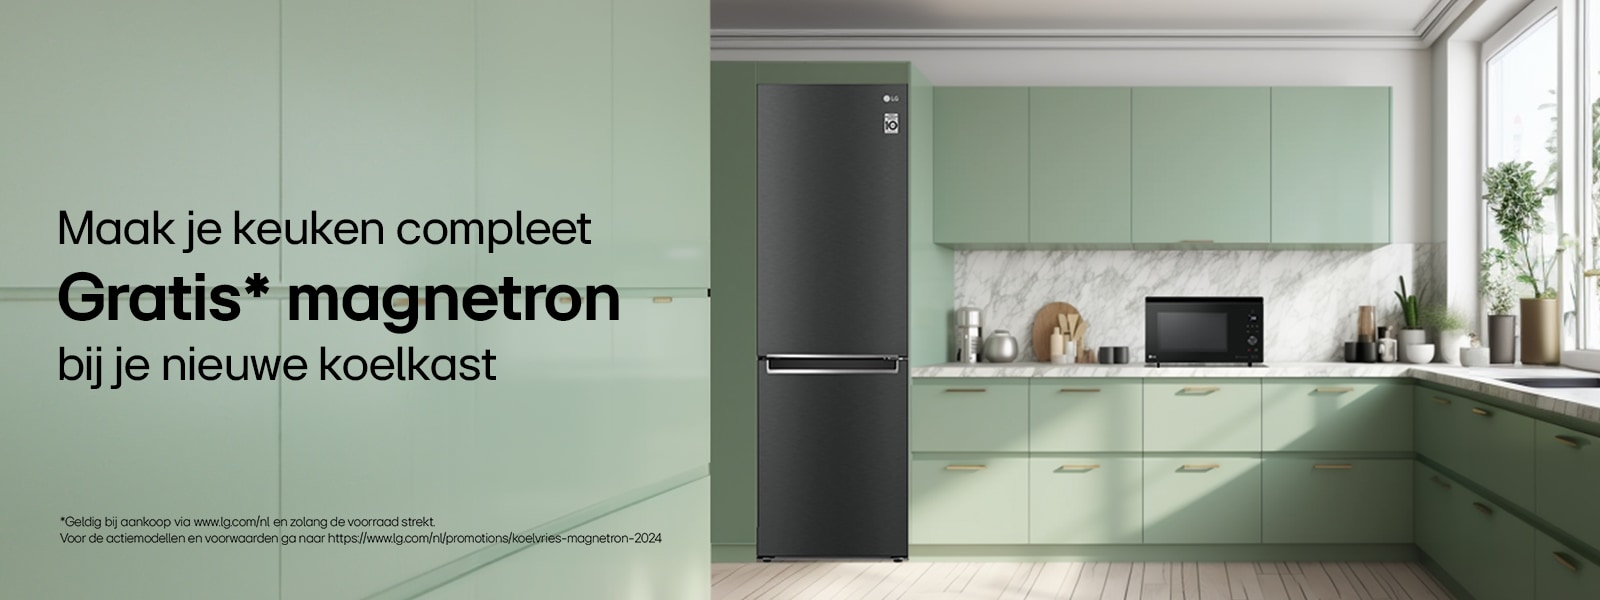 een koelkast en magnetron in een groen kleurige keuken. Bundel promotie banner